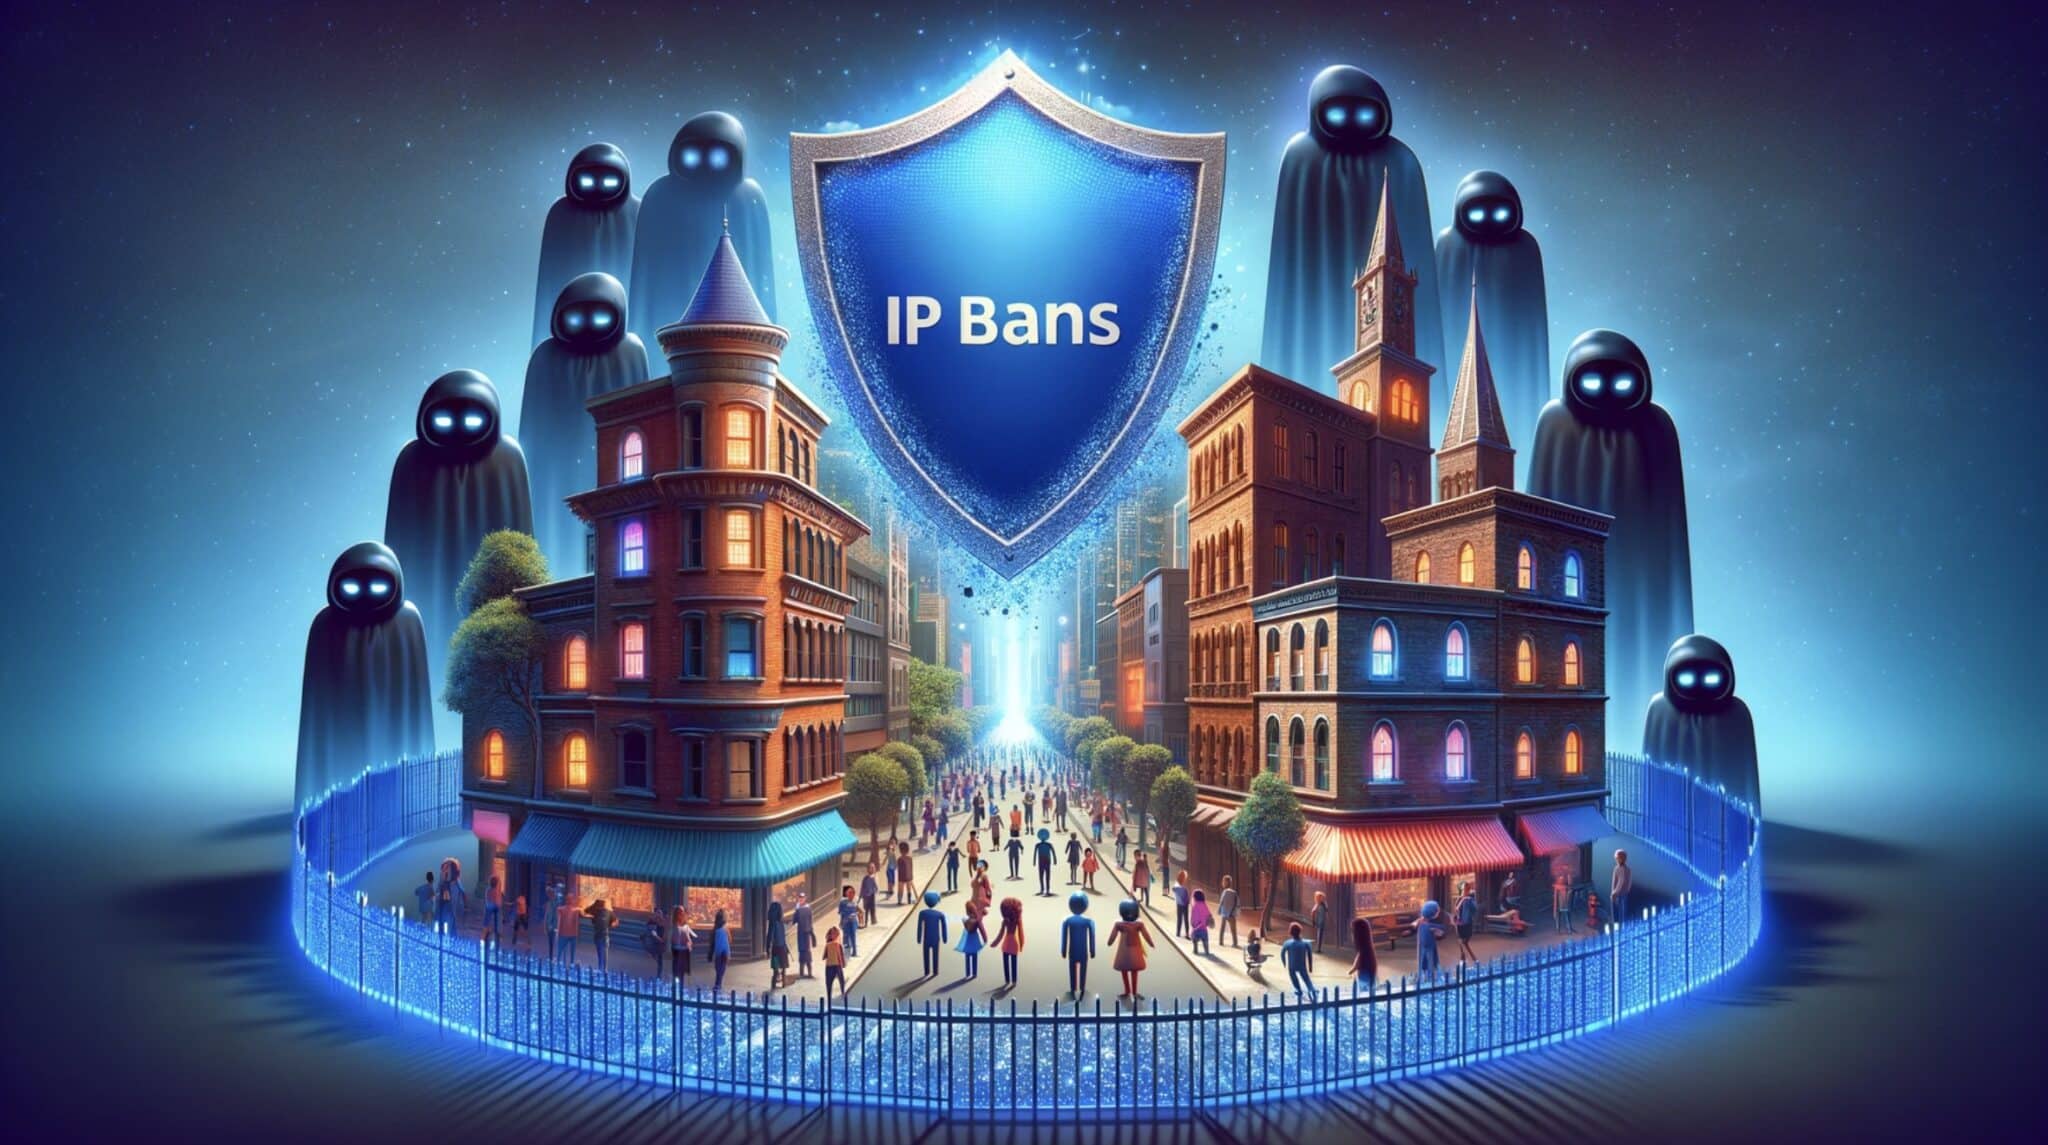 Vysvětlení zákazů IP: Jak se jim vyhnout při škrábání webu